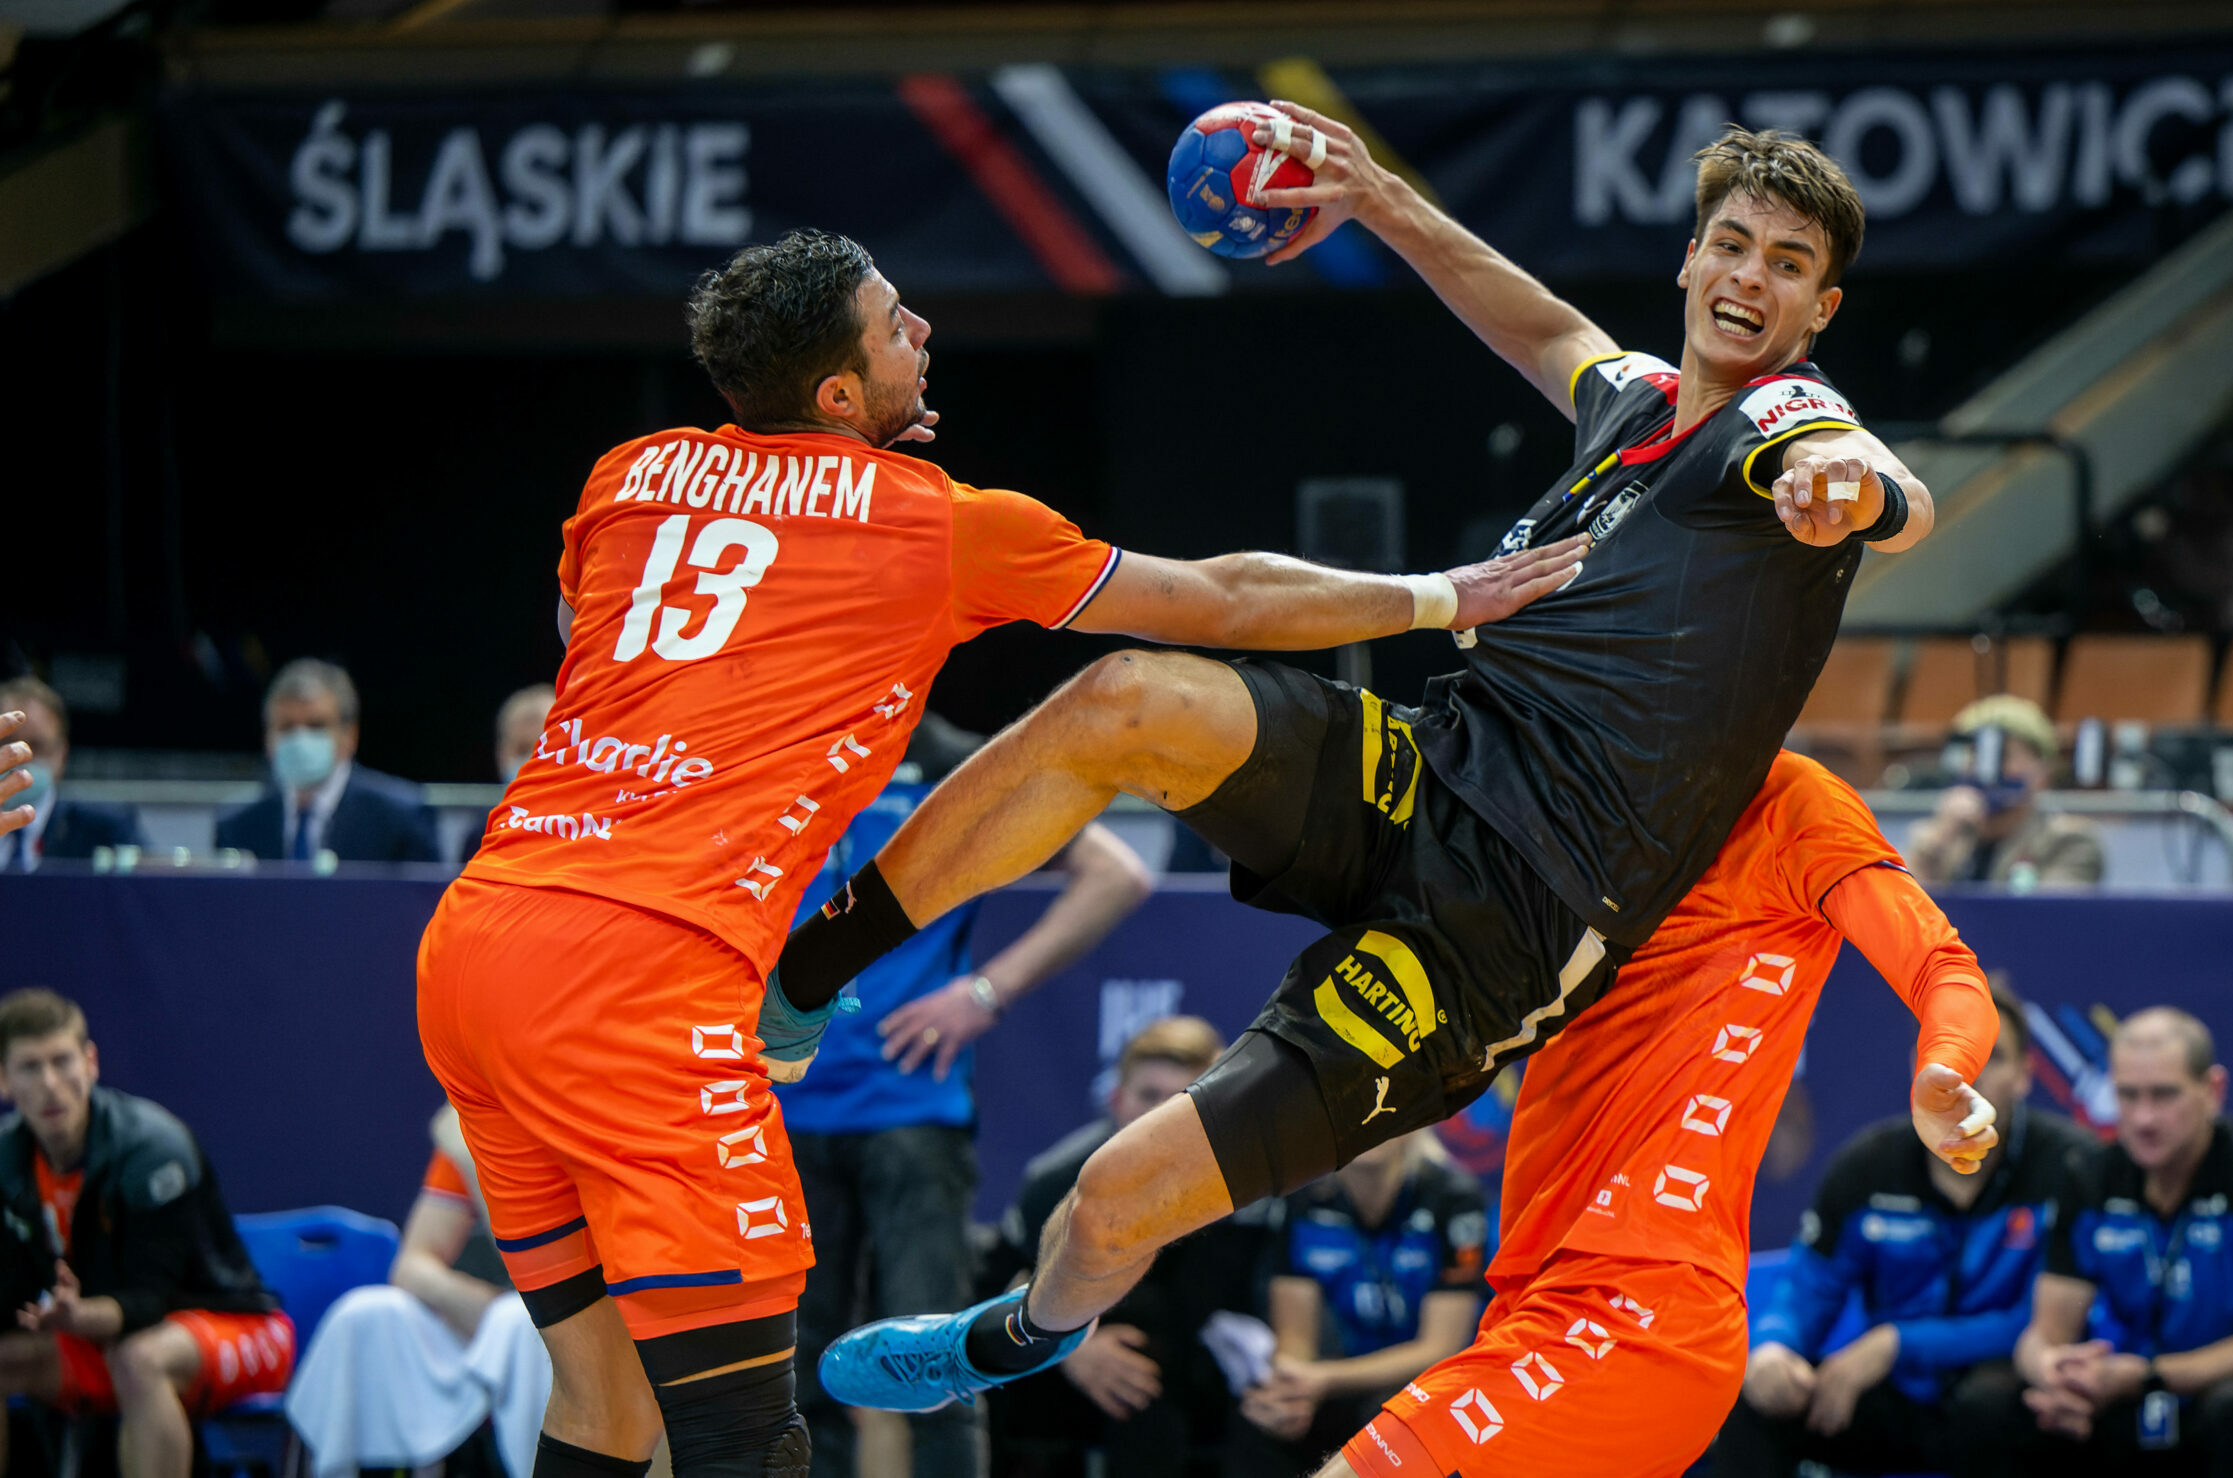 Der deutsche Handball-Nationalspieler Julian Köster beim Torwurf